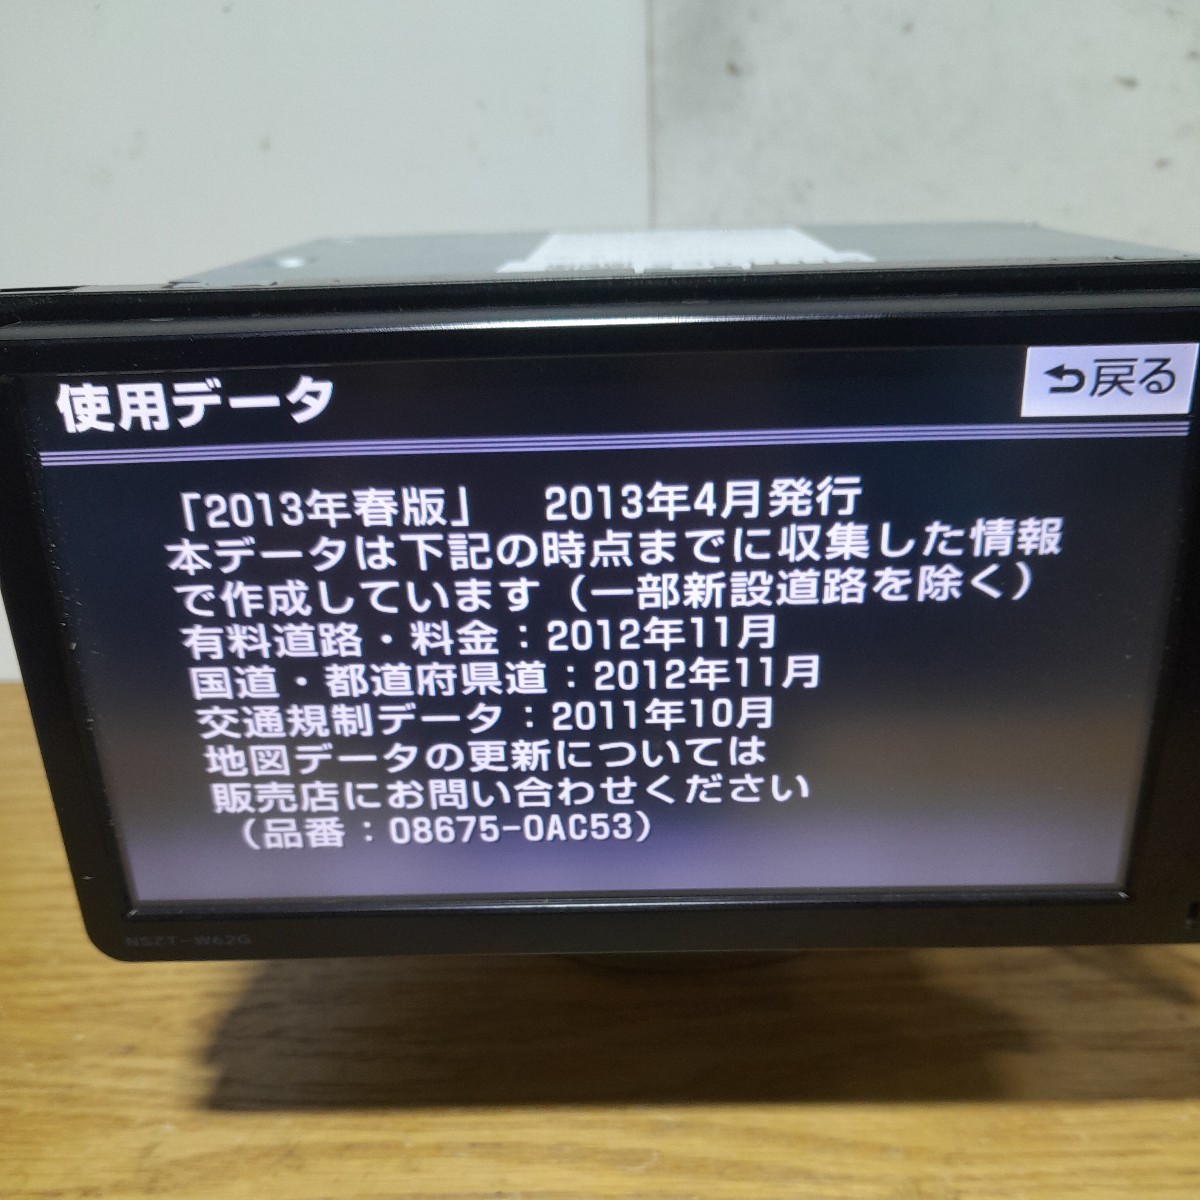 トヨタ純正ナビ NSZT-W62G 2013年春版地図データ 管理番号:23011112 